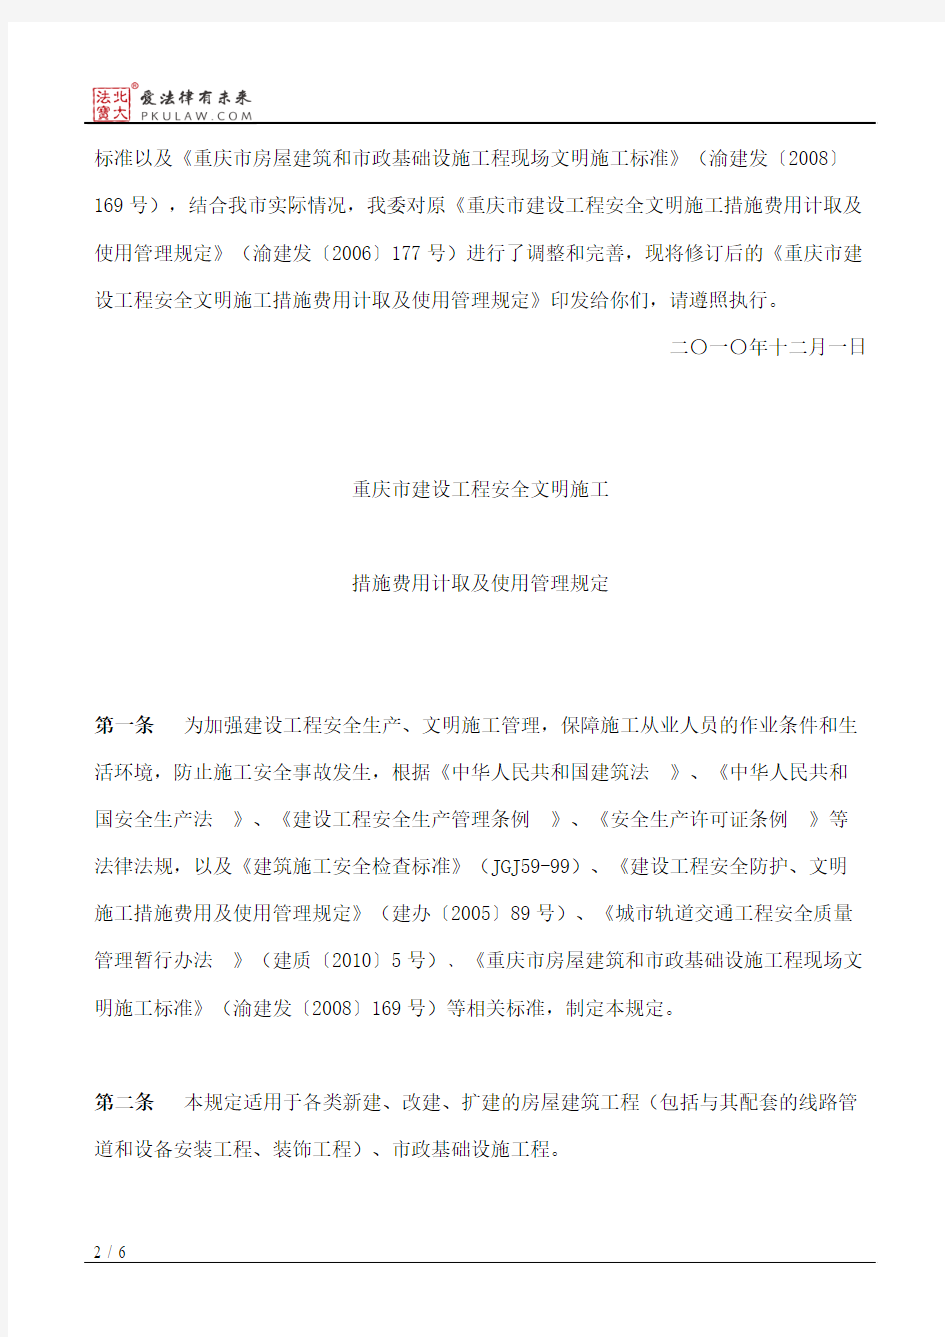 重庆市城乡建设委员会关于印发《重庆市建设工程安全文明施工措施